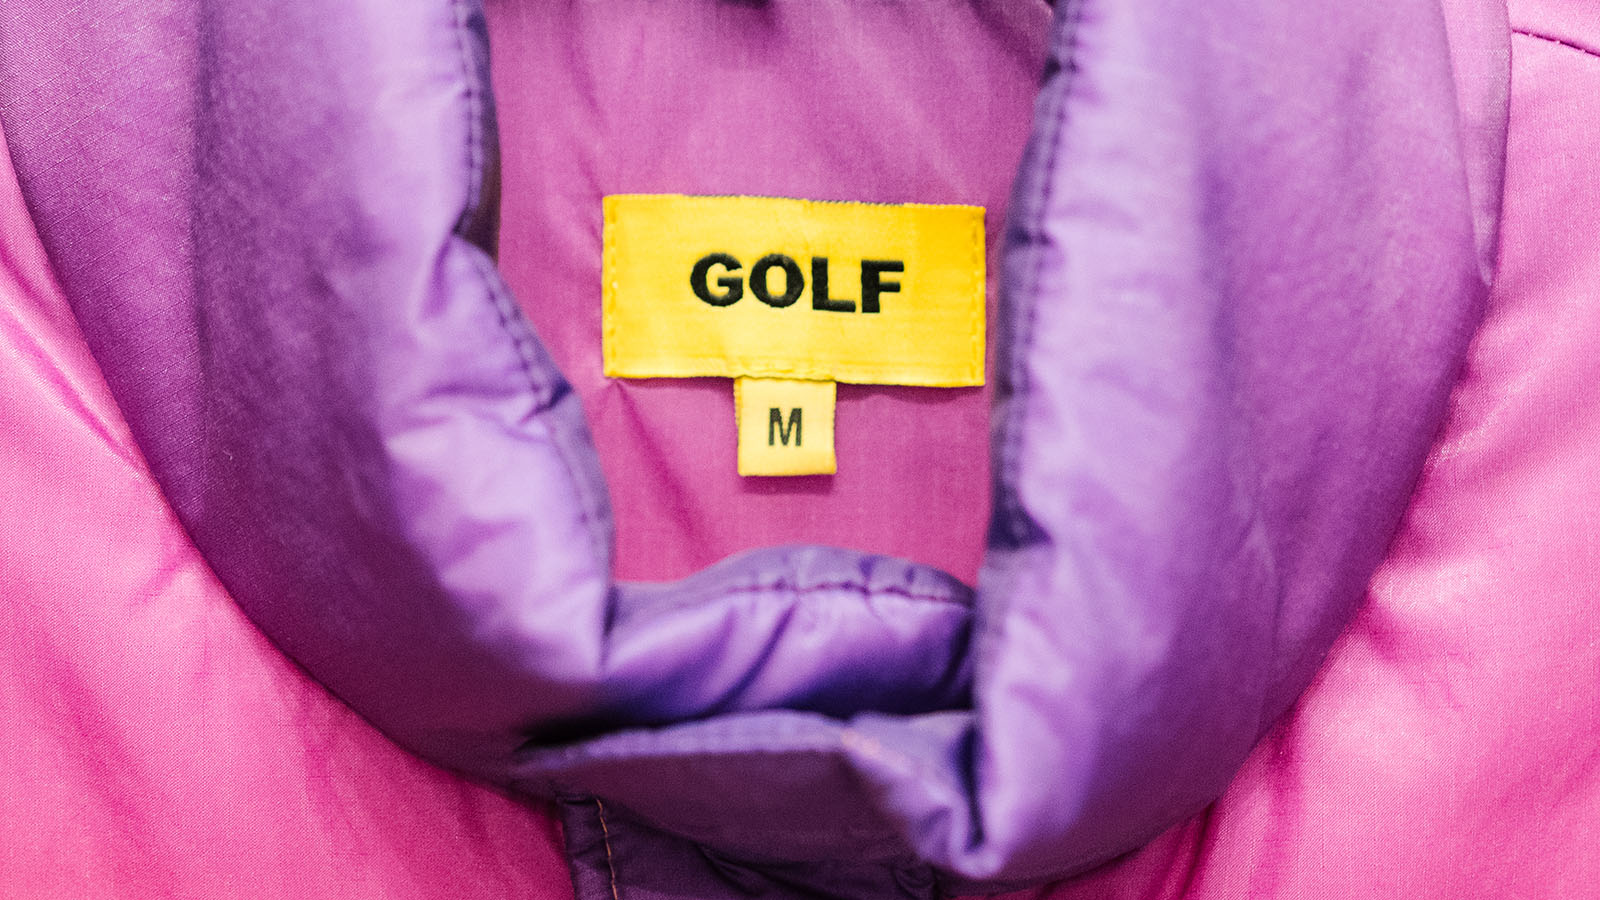 Golf Wang garment label